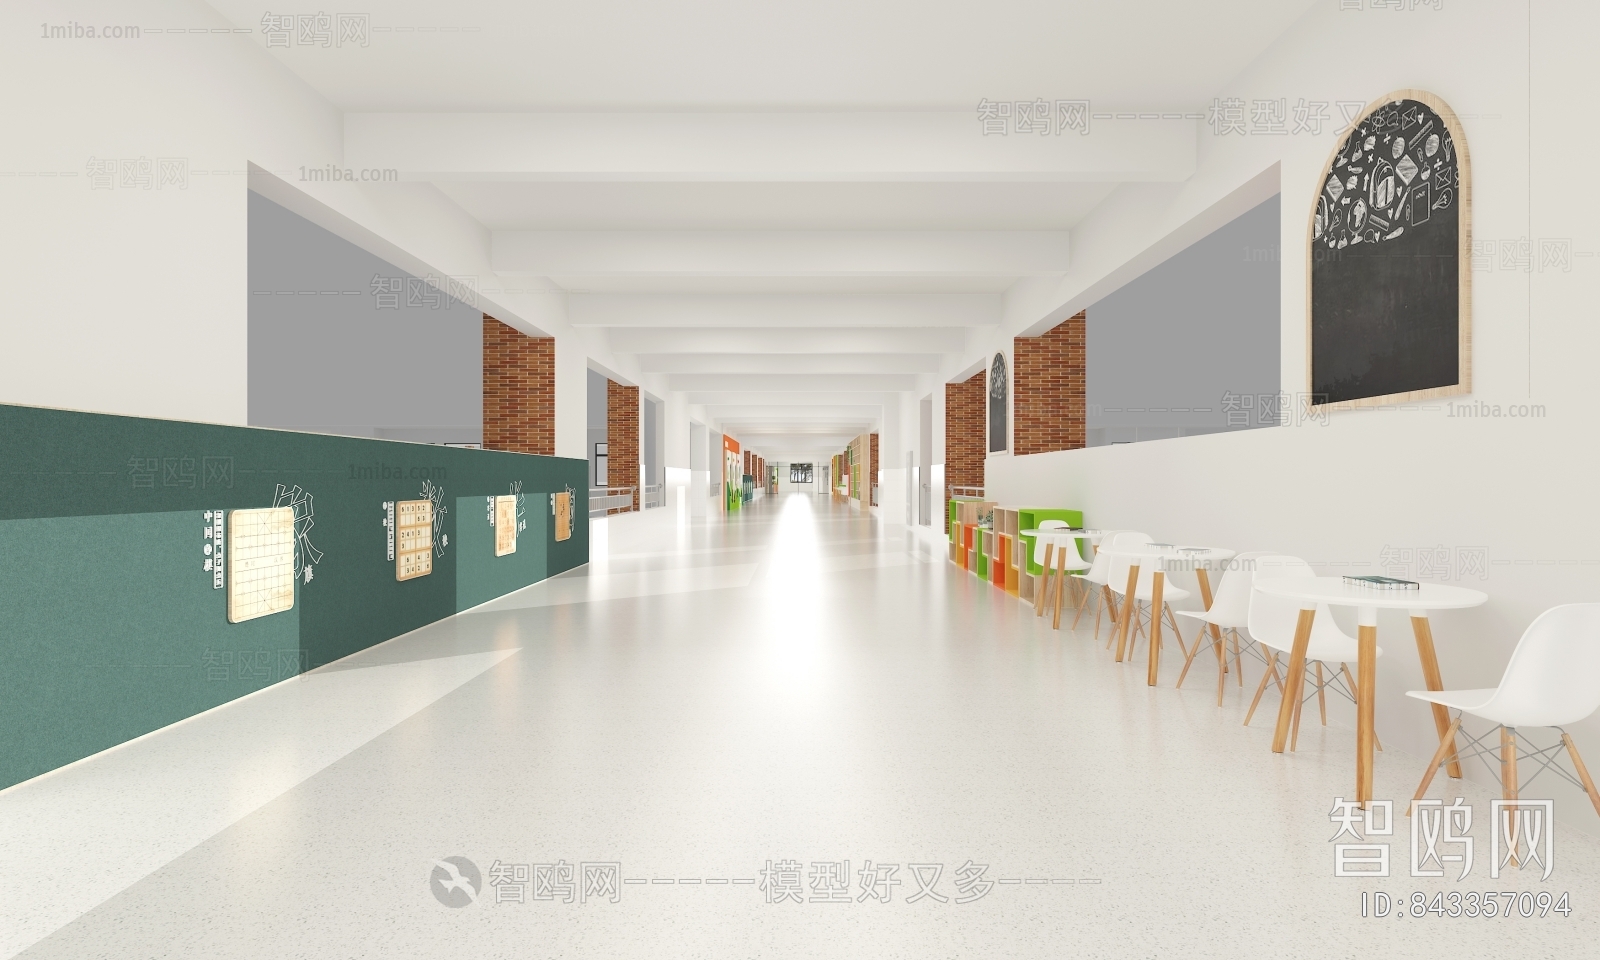 现代校园文化长廊